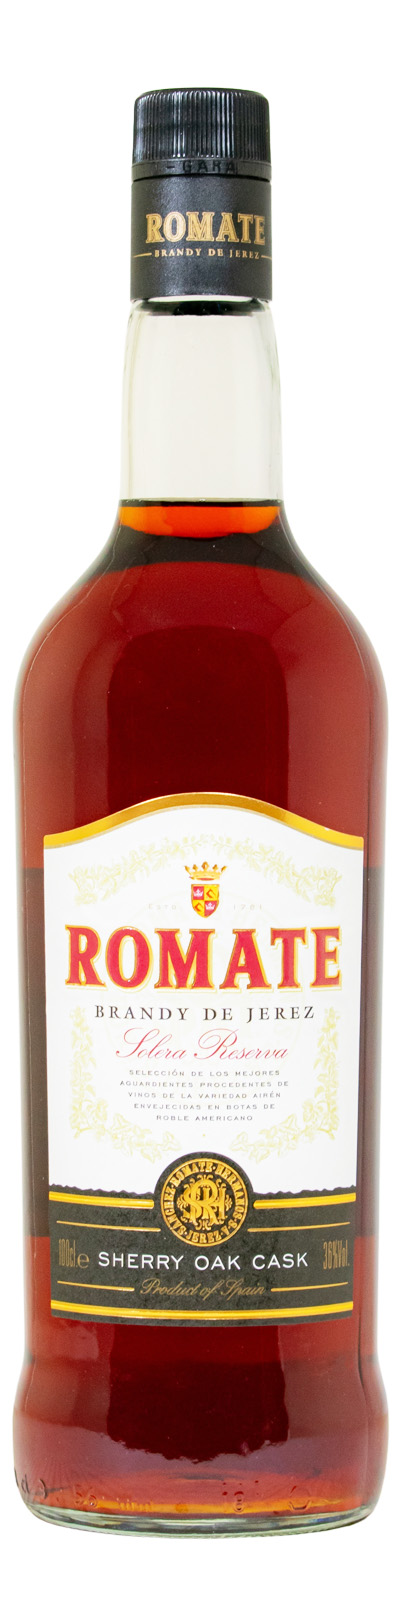 Romate Brandy Solera Reserva Brandy (1L) günstig kaufen | Weinbrände